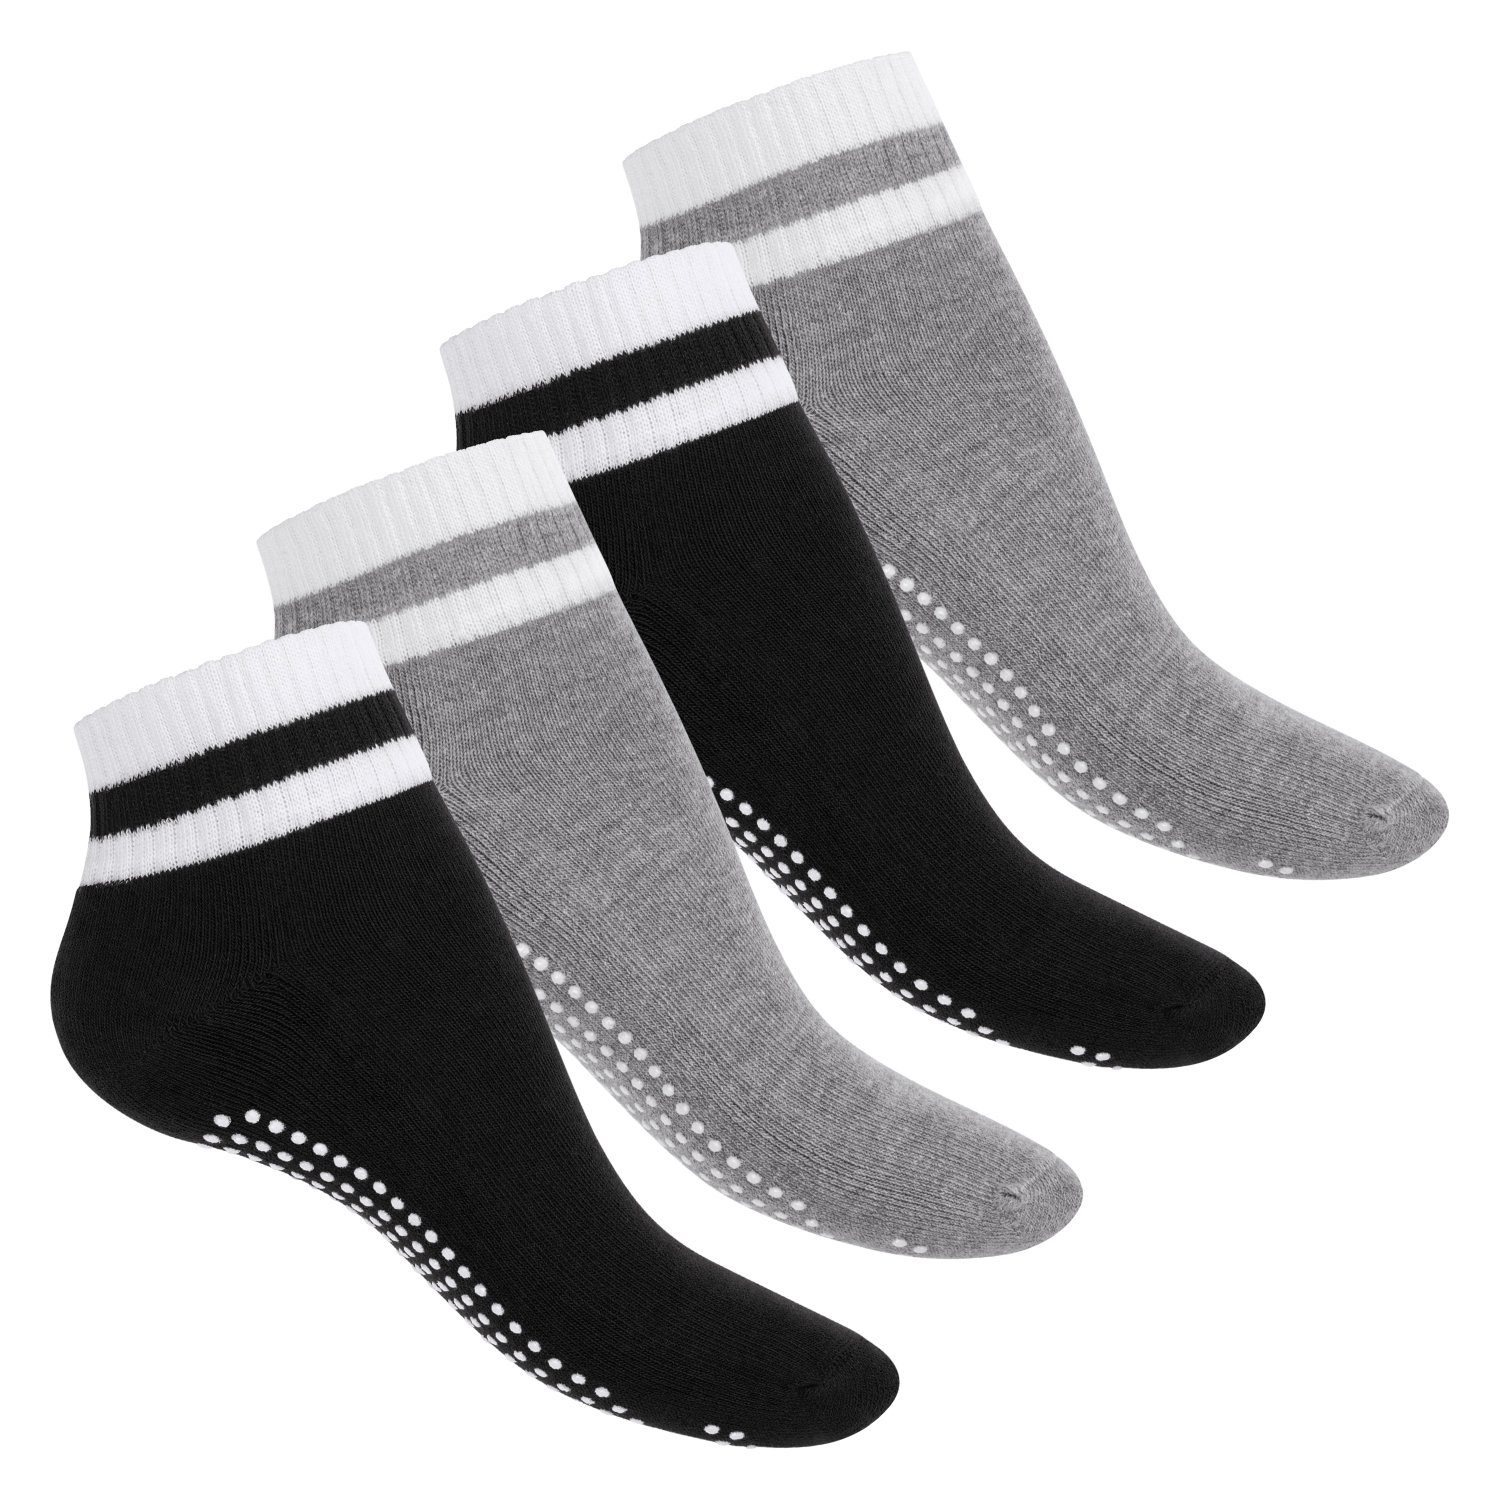 celodoro ABS-Socken Damen & Herren Yoga & Wellness Socken ABS Frotteesohle (4 Paar) Variante 3